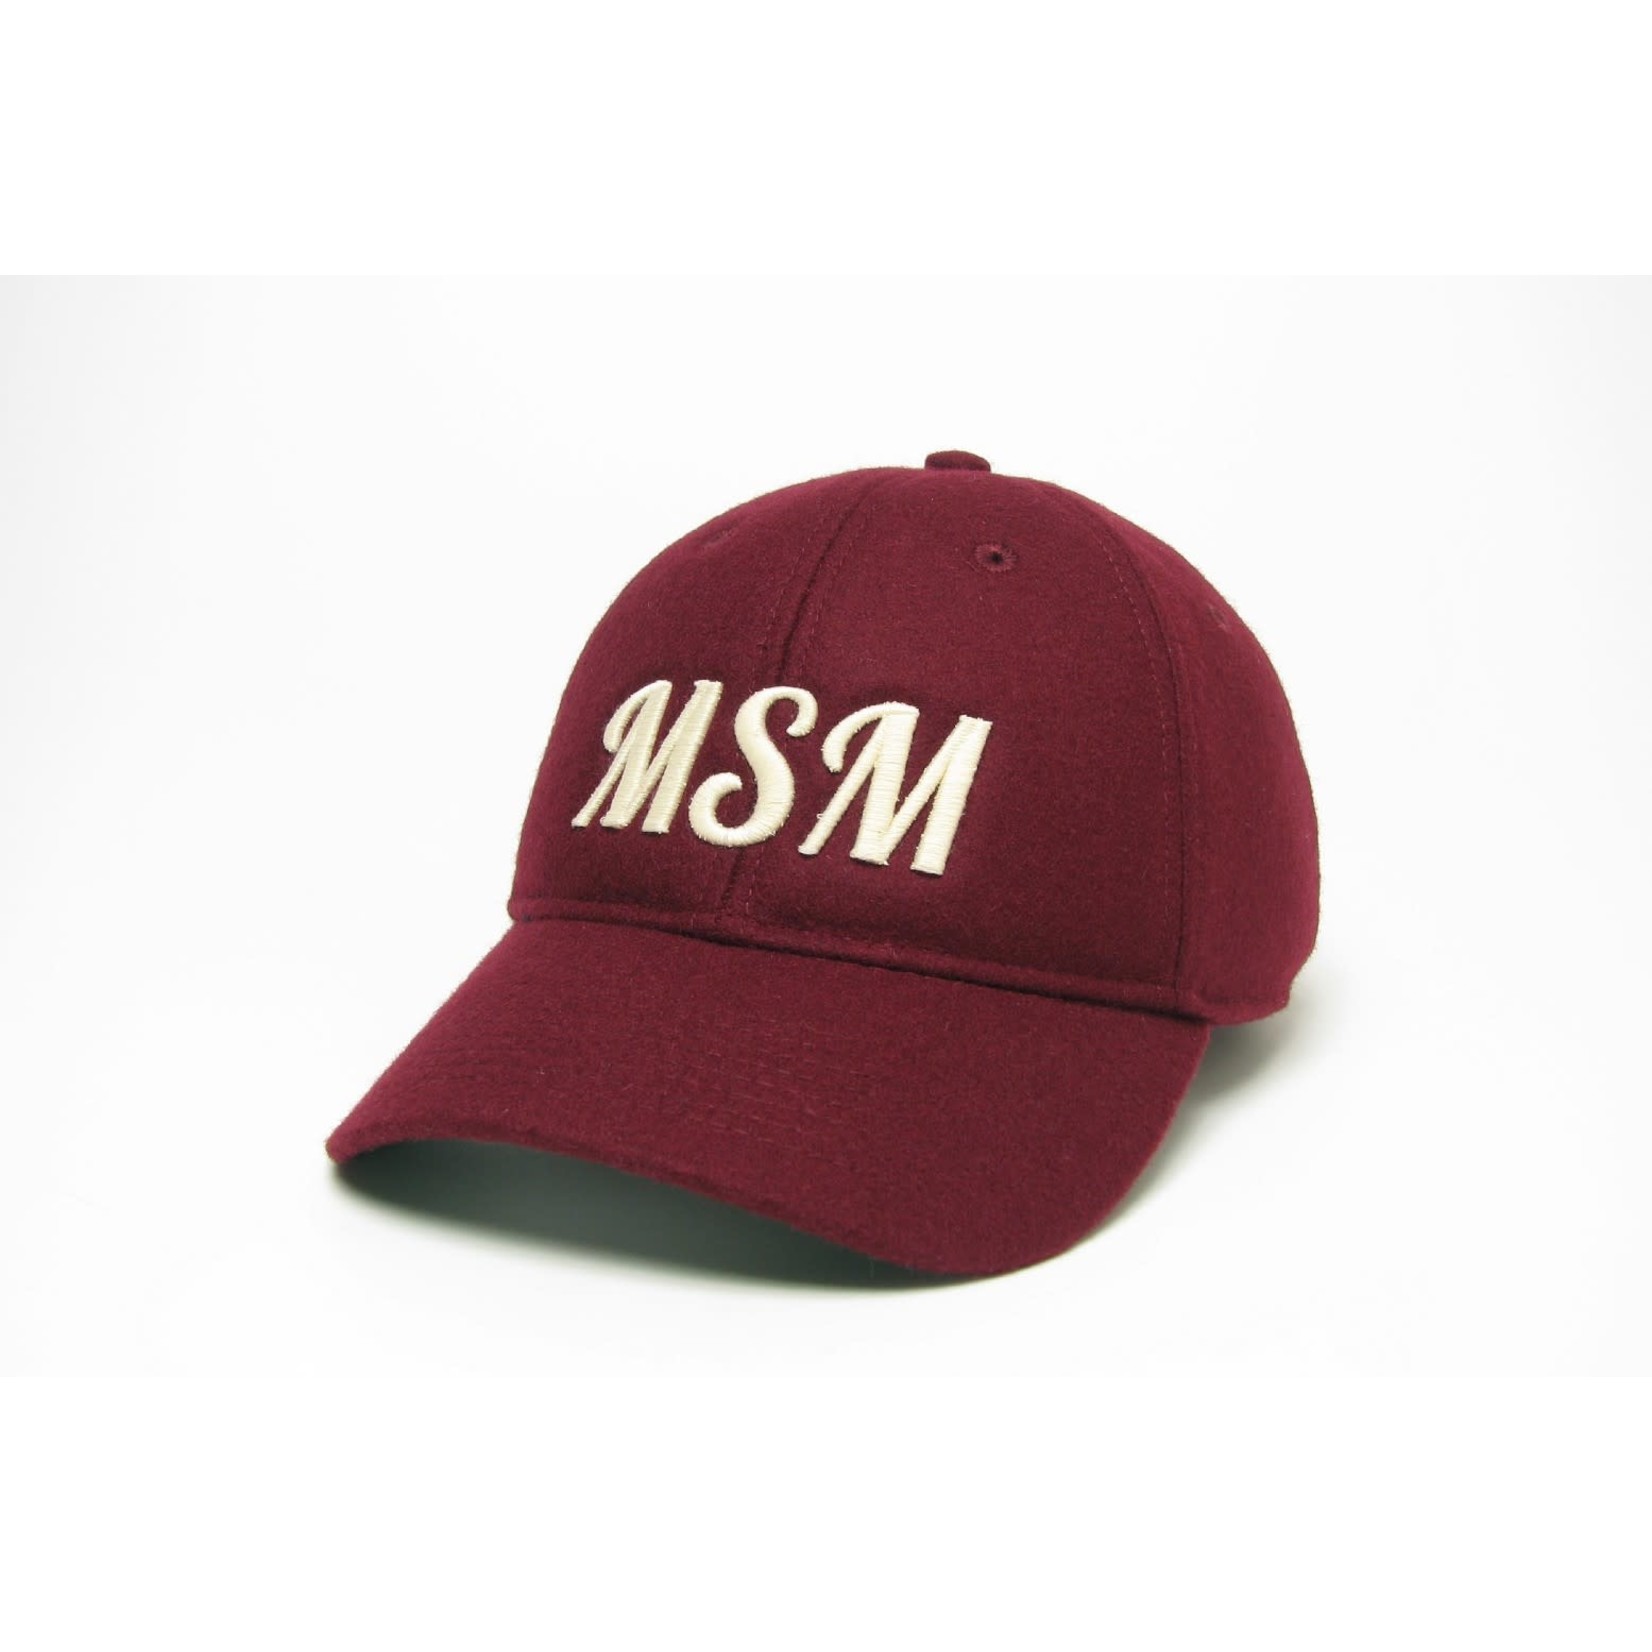 Maroon MSM Wool Cap